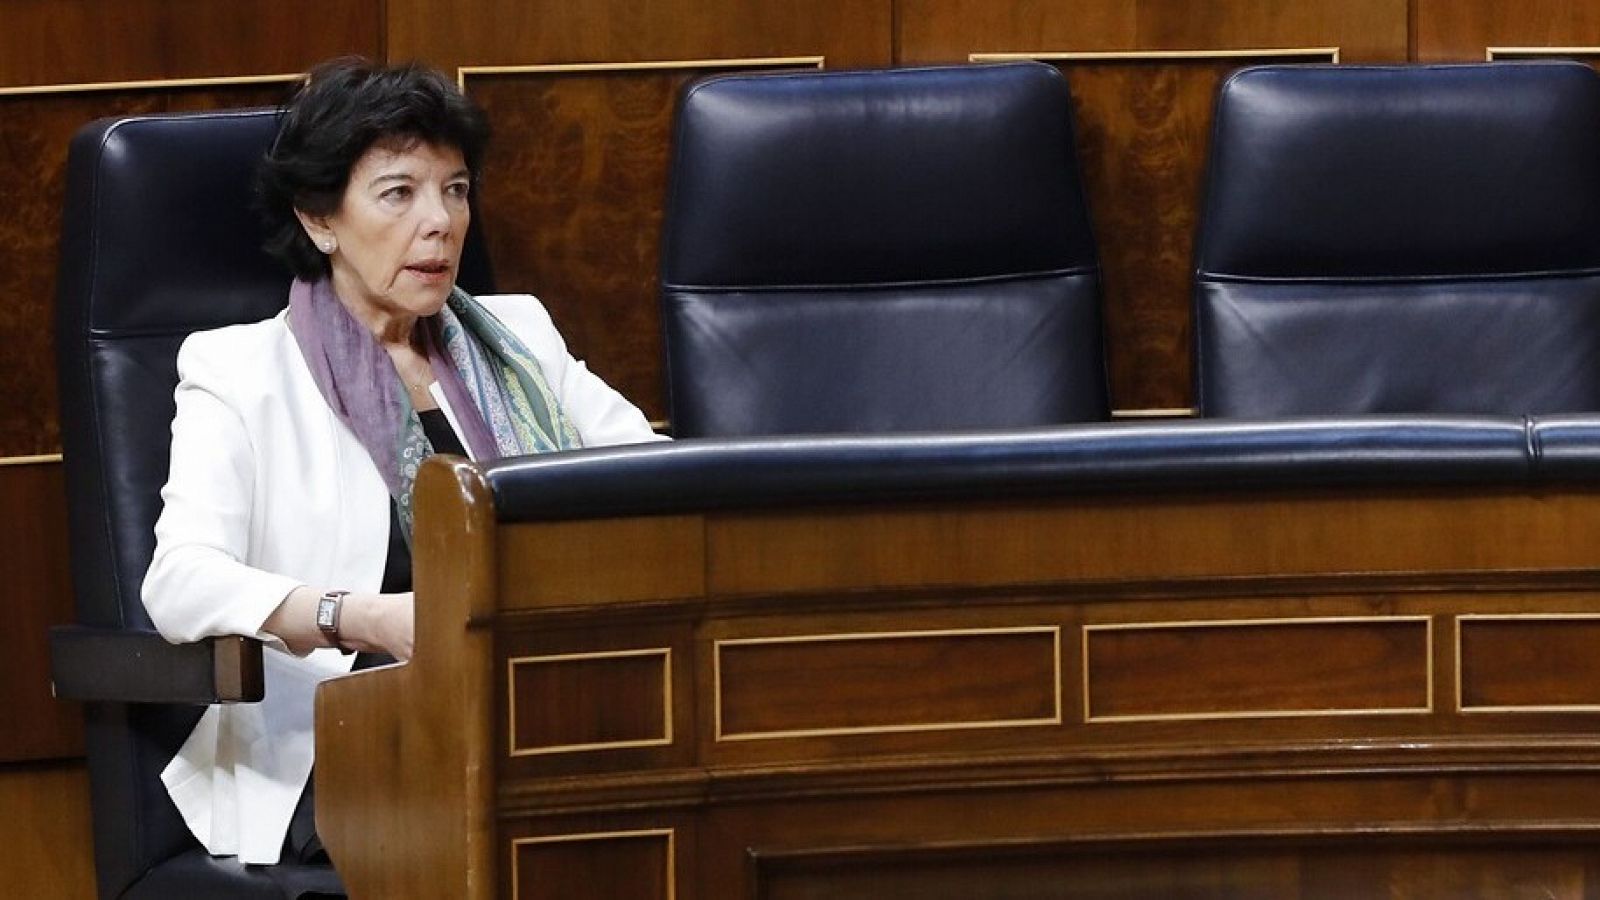 La 'ley Celaá' supera el primer examen en el Congreso frente la opisición de PP, Vox y Cs - RTVE.es